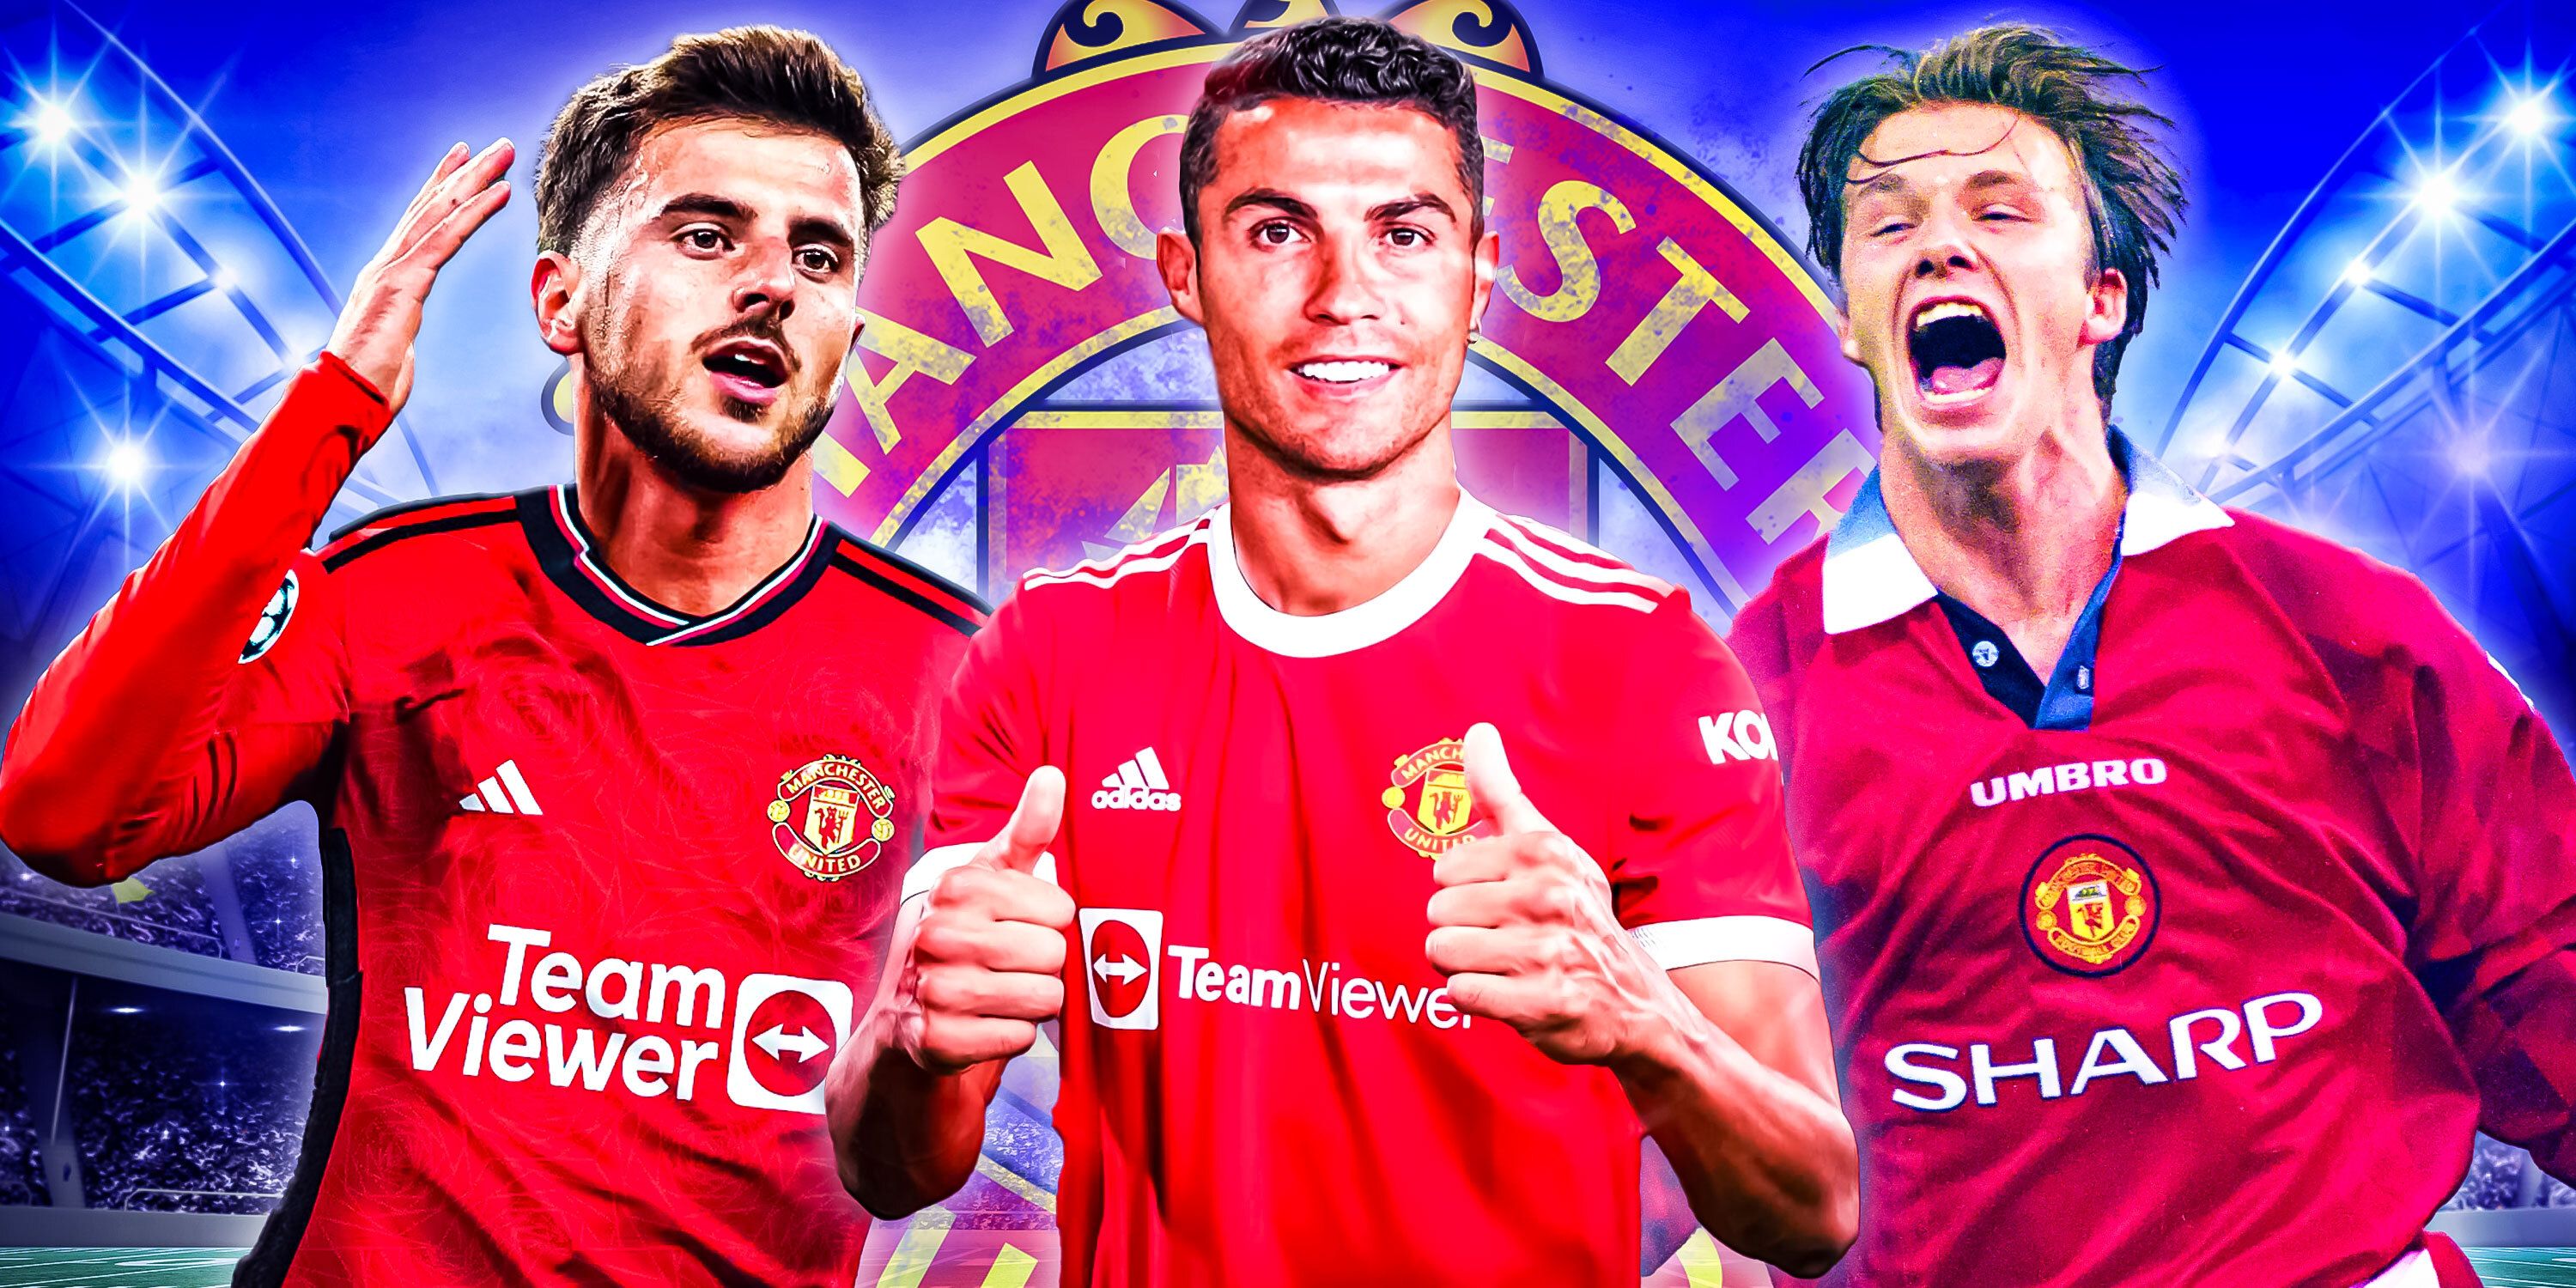 Mason Mount, Cristiano Ronaldo and David Beckham of Manchester United.